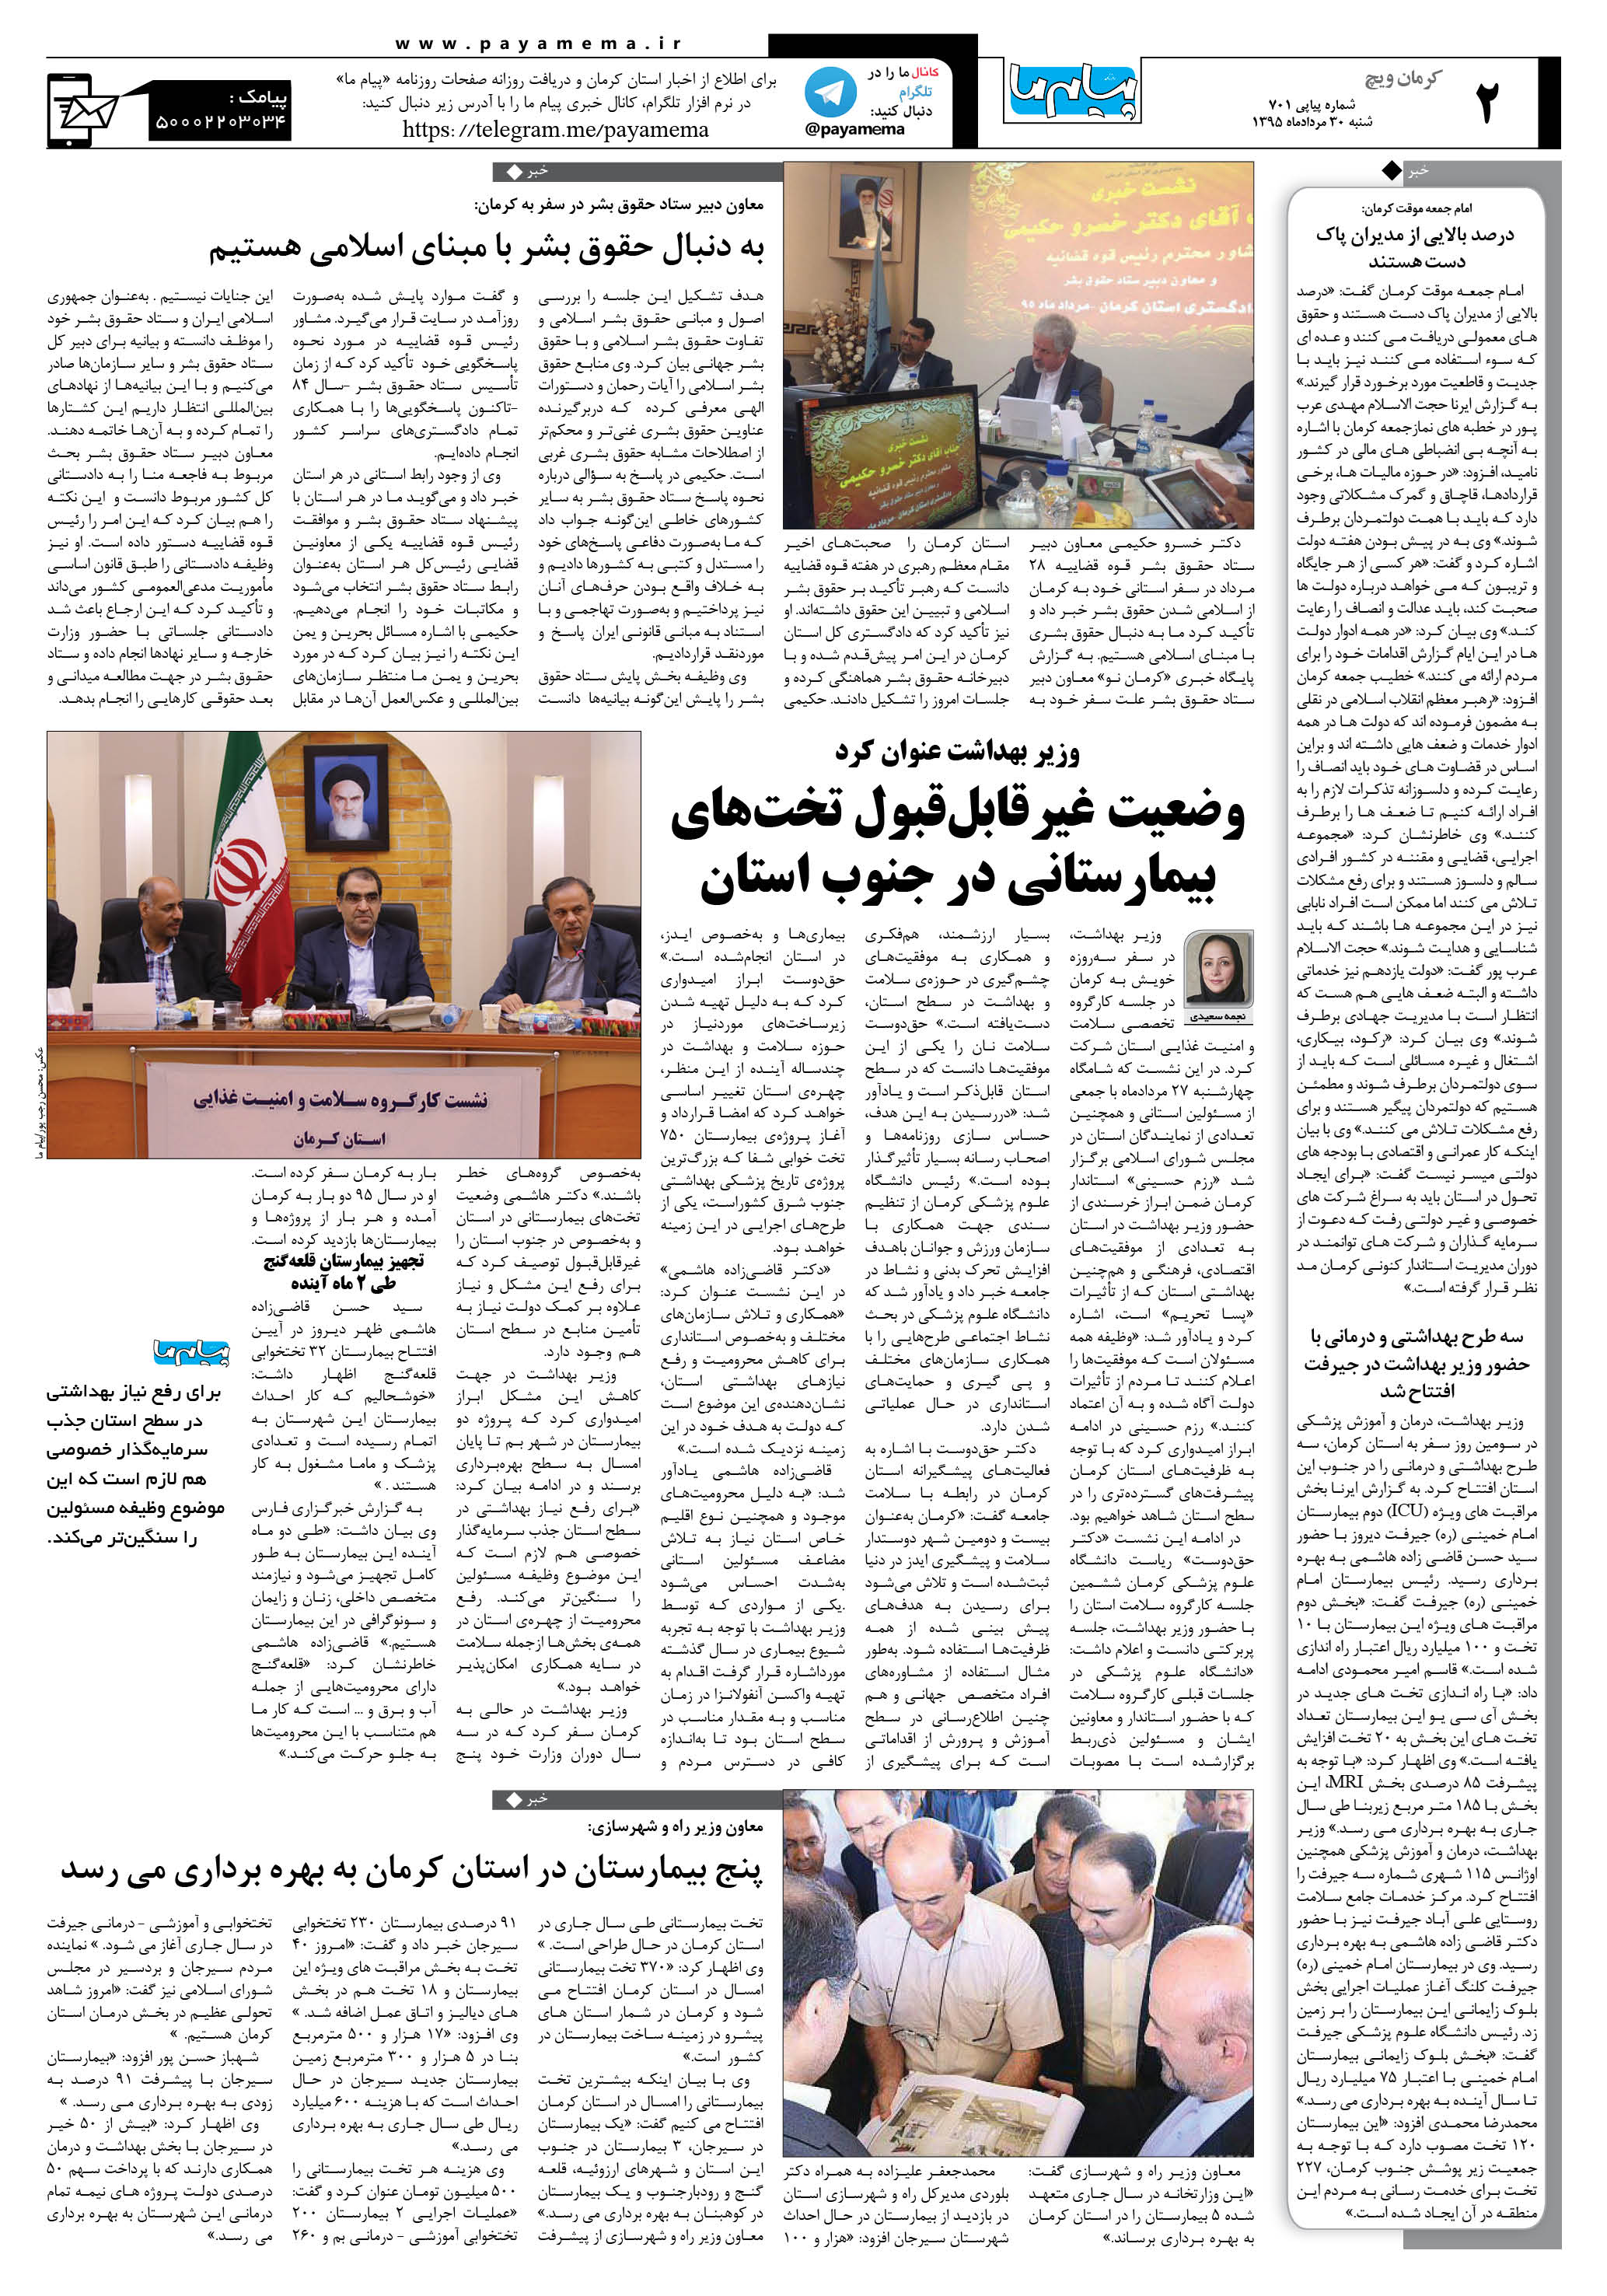 صفحه کرمان ویج شماره 701 روزنامه پیام ما